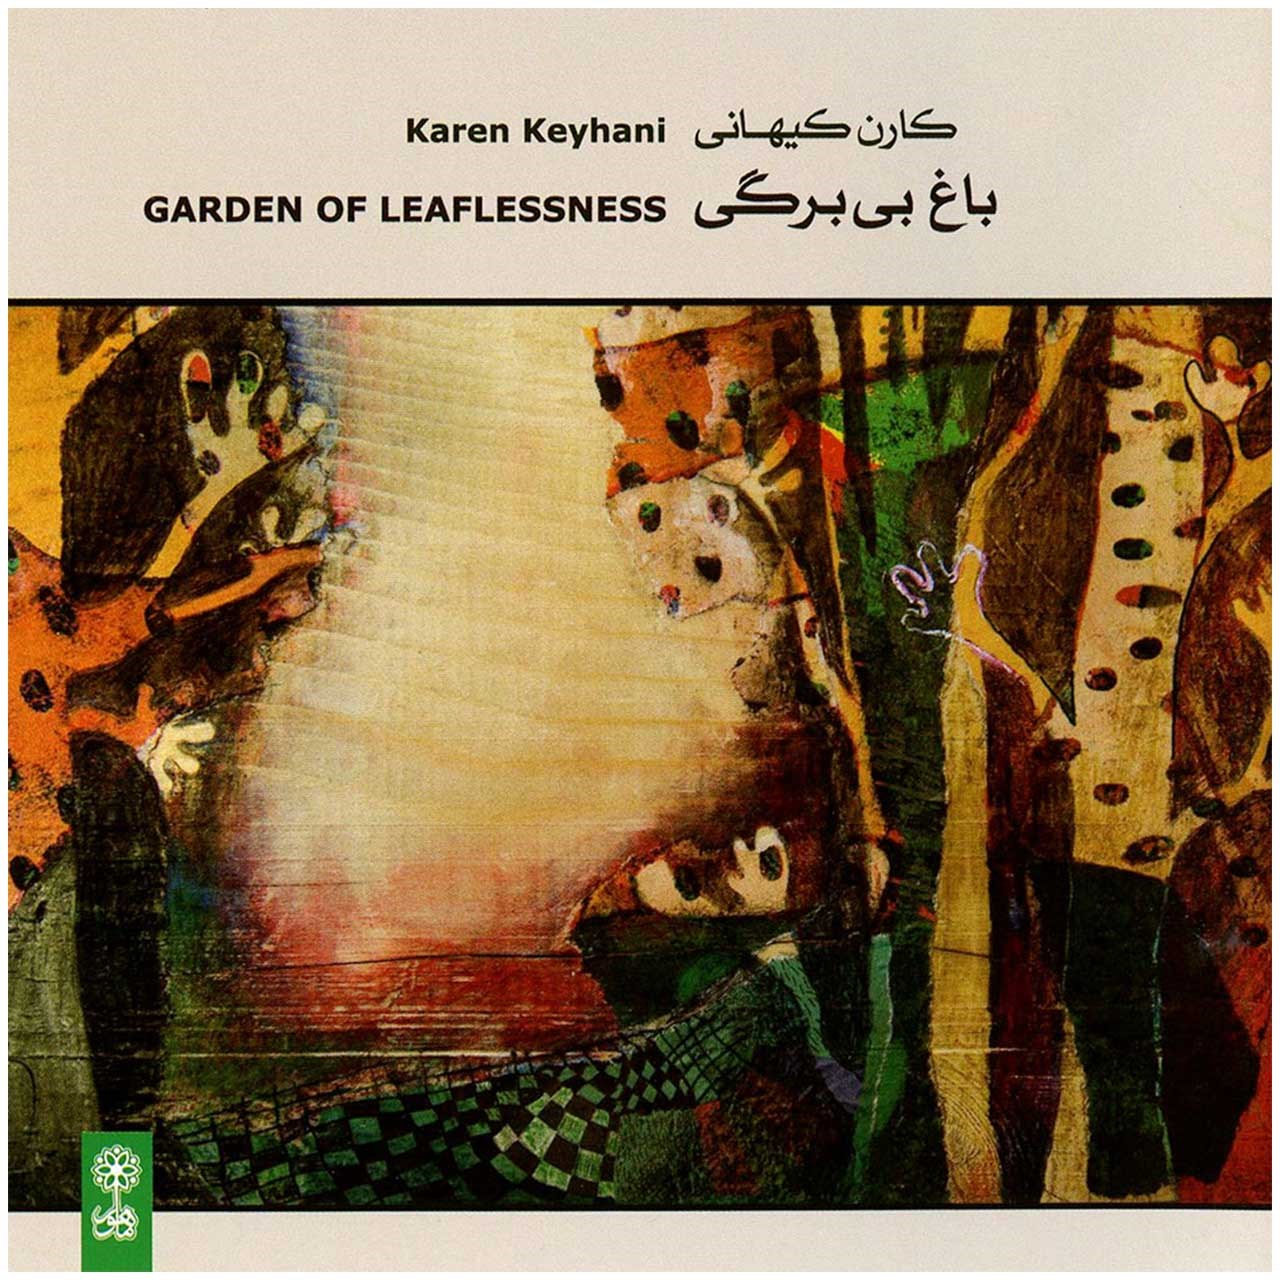 آلبوم موسیقی باغ بی برگی اثر کارن کیهانی